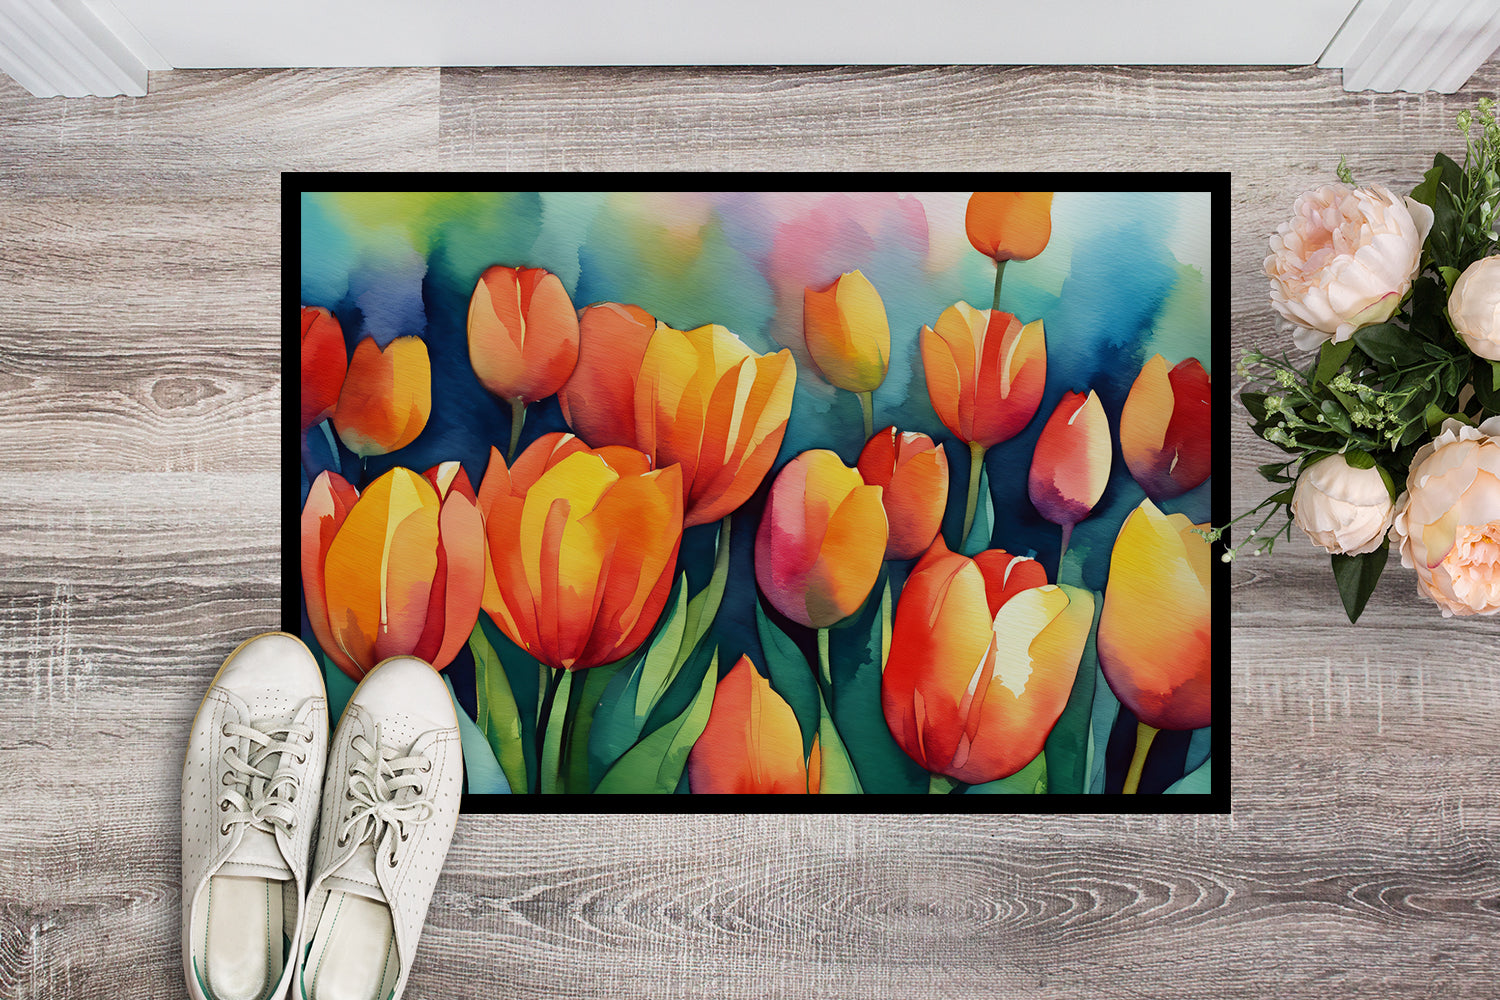 Buy this Tulips in Watercolor Doormat 18x27